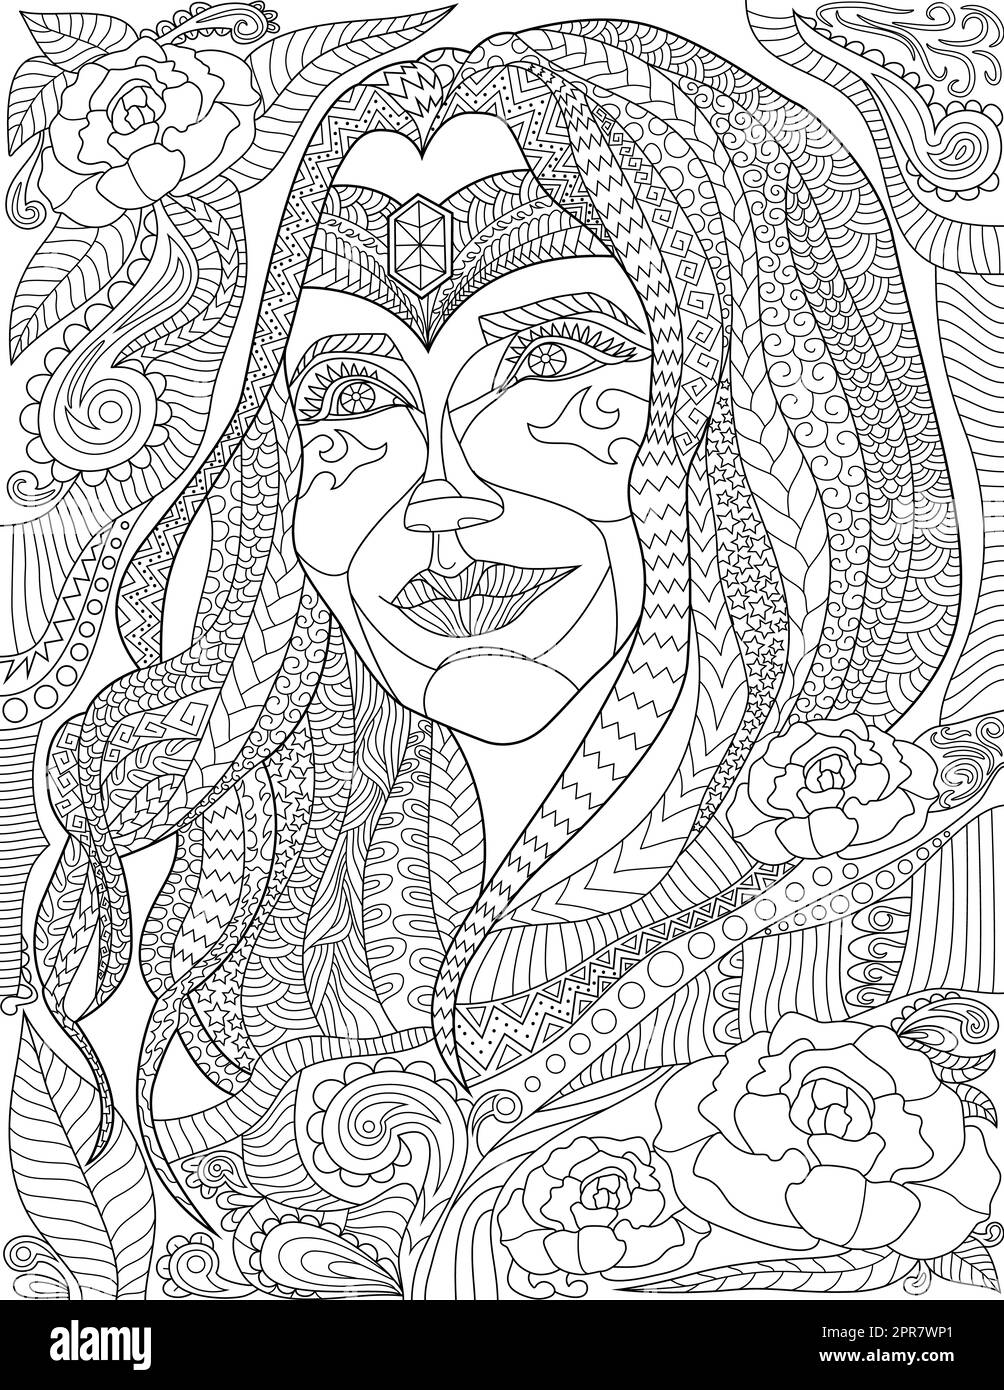 Coloriage page avec détail beau visage de femme avec des bijoux sur le front. Banque D'Images